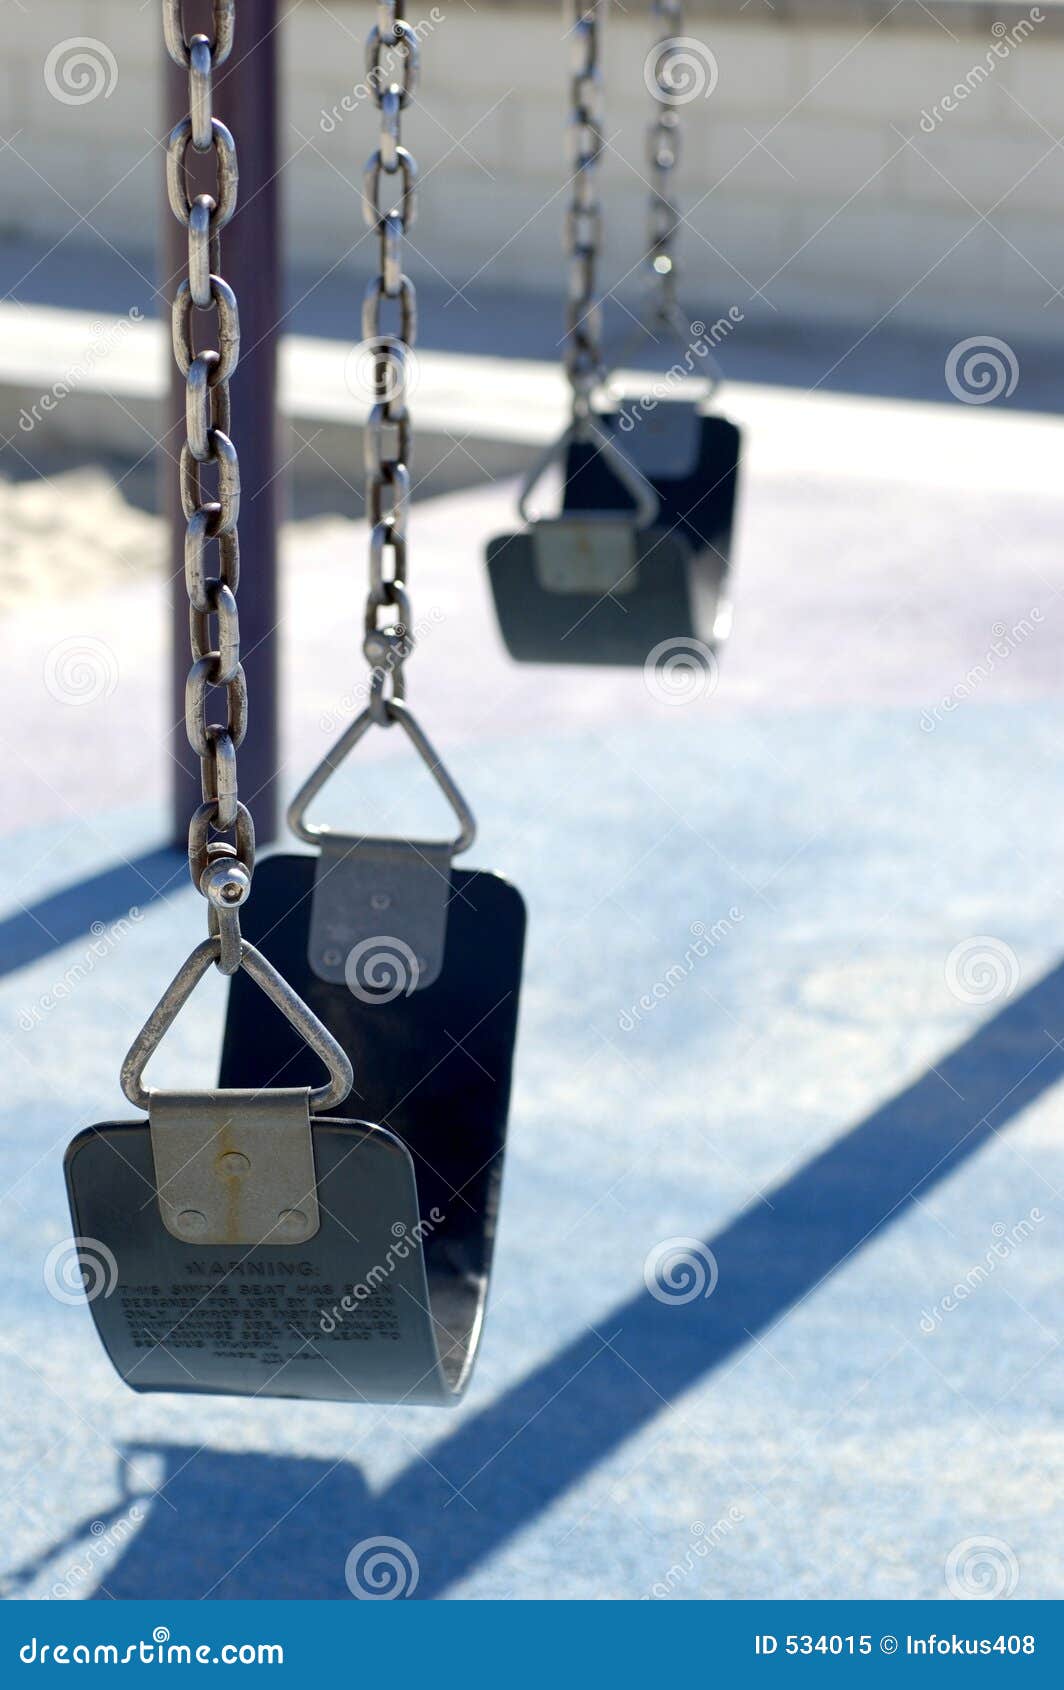 lonely swings